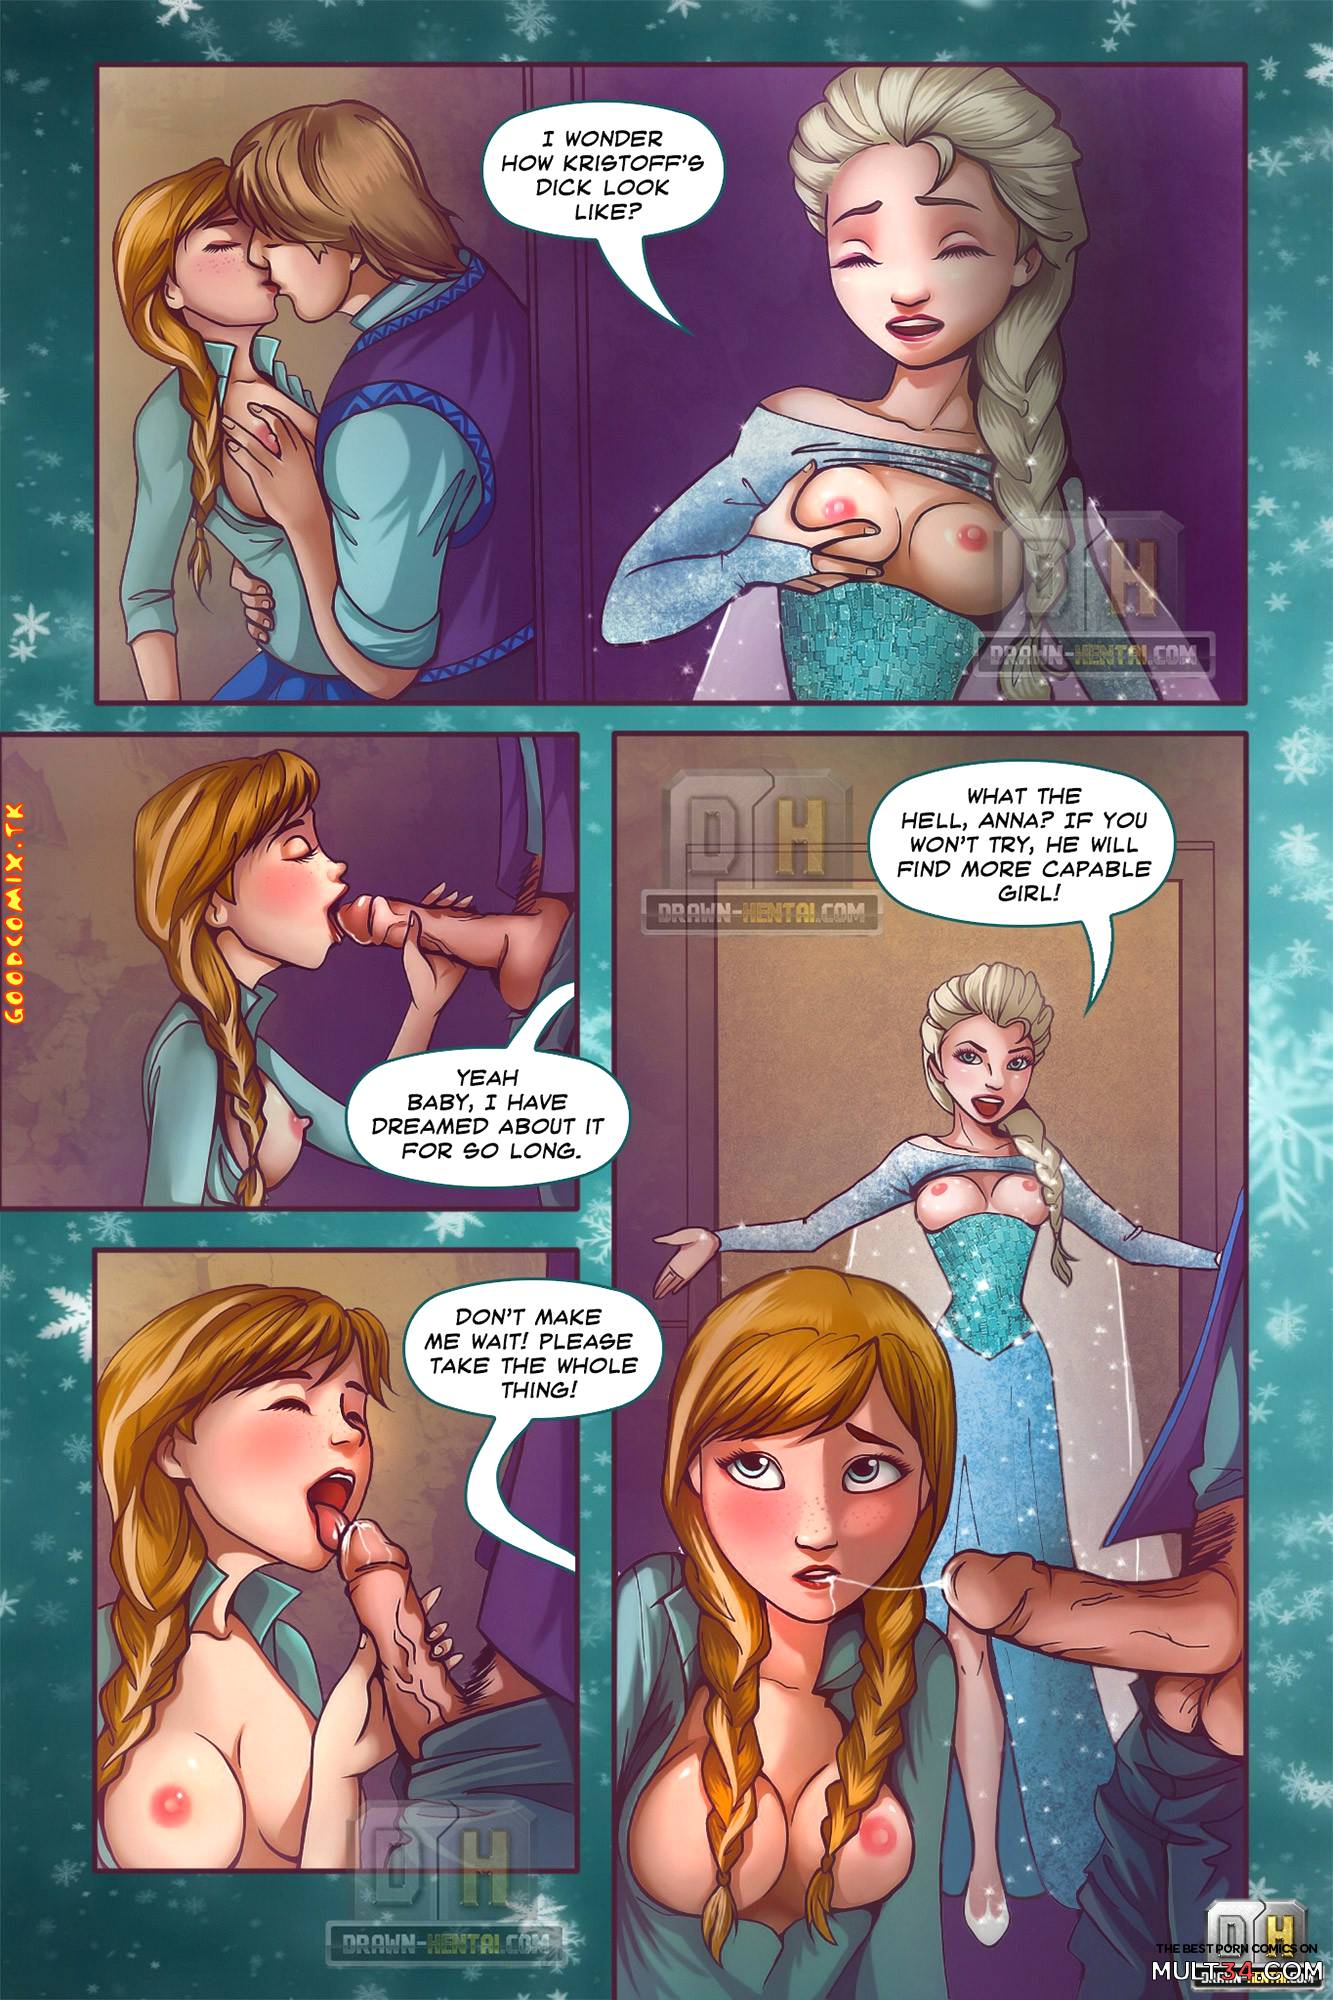 Best Toon Porn Frozen - Disney Frozen porn comic - the best cartoon porn comics, Rule 34 | MULT34